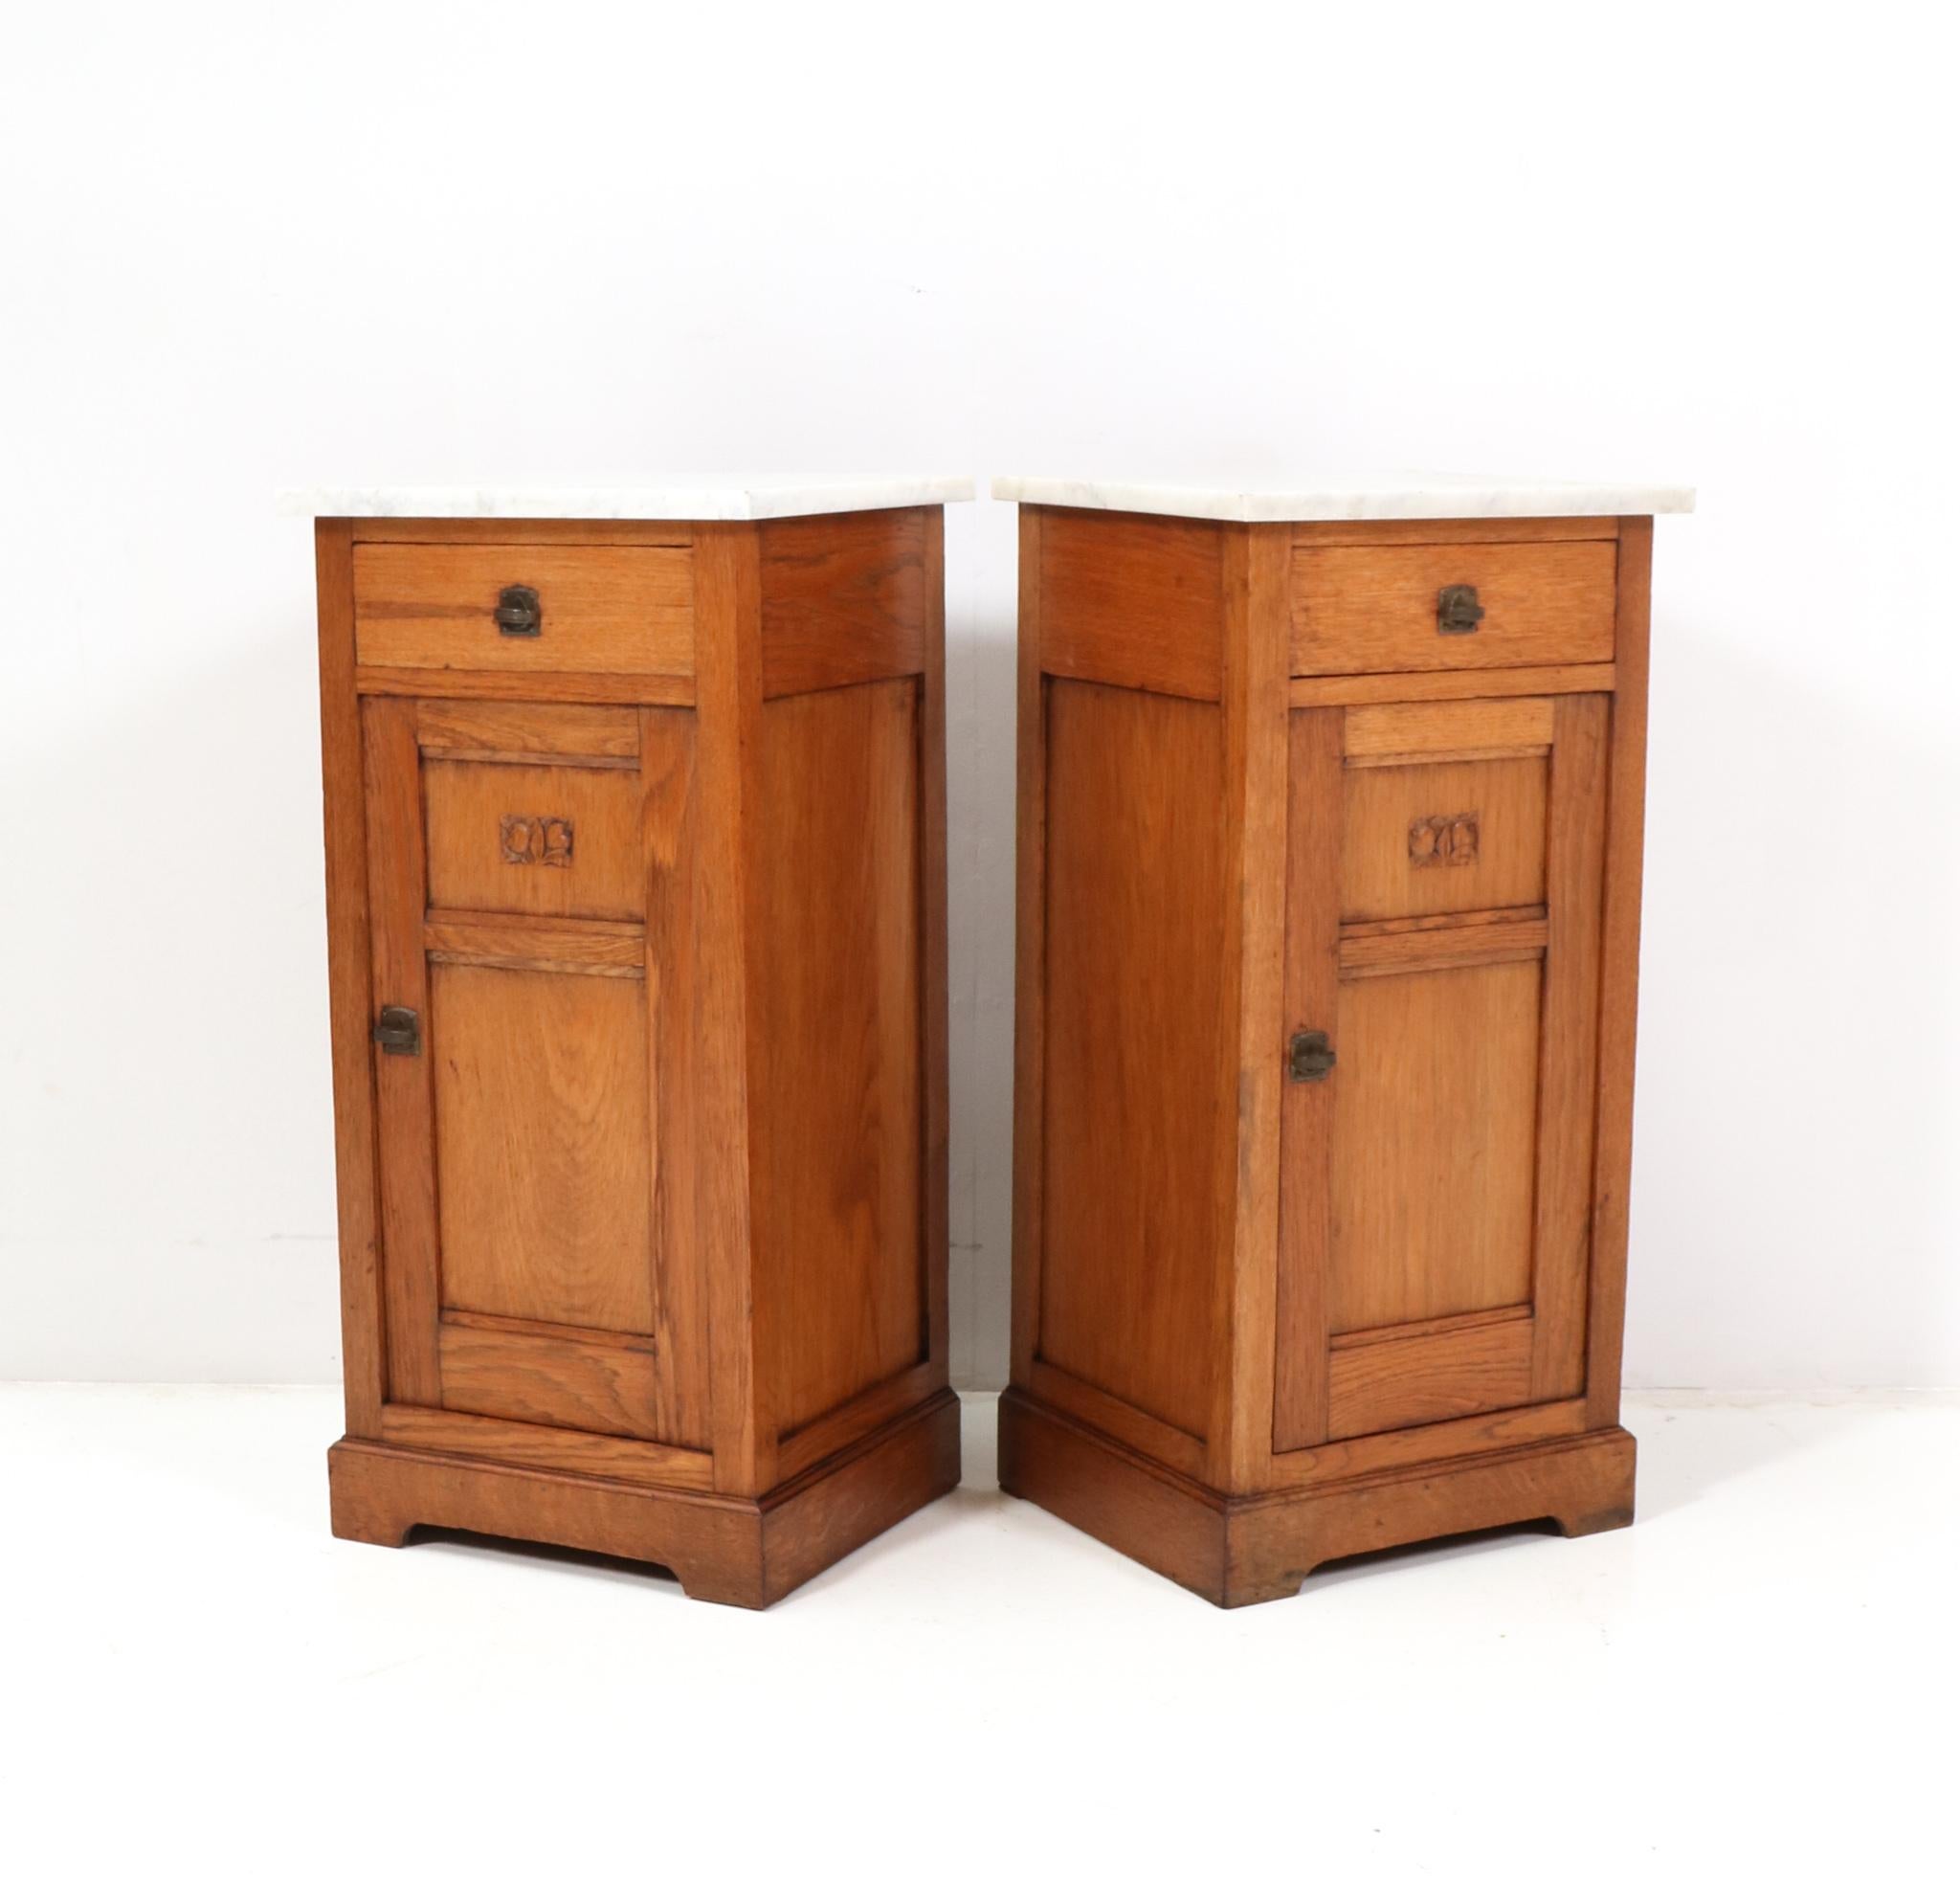 Two Oak Art Nouveau Jugendstil Nightstands or Bedside Tables, 1900s For Sale 3